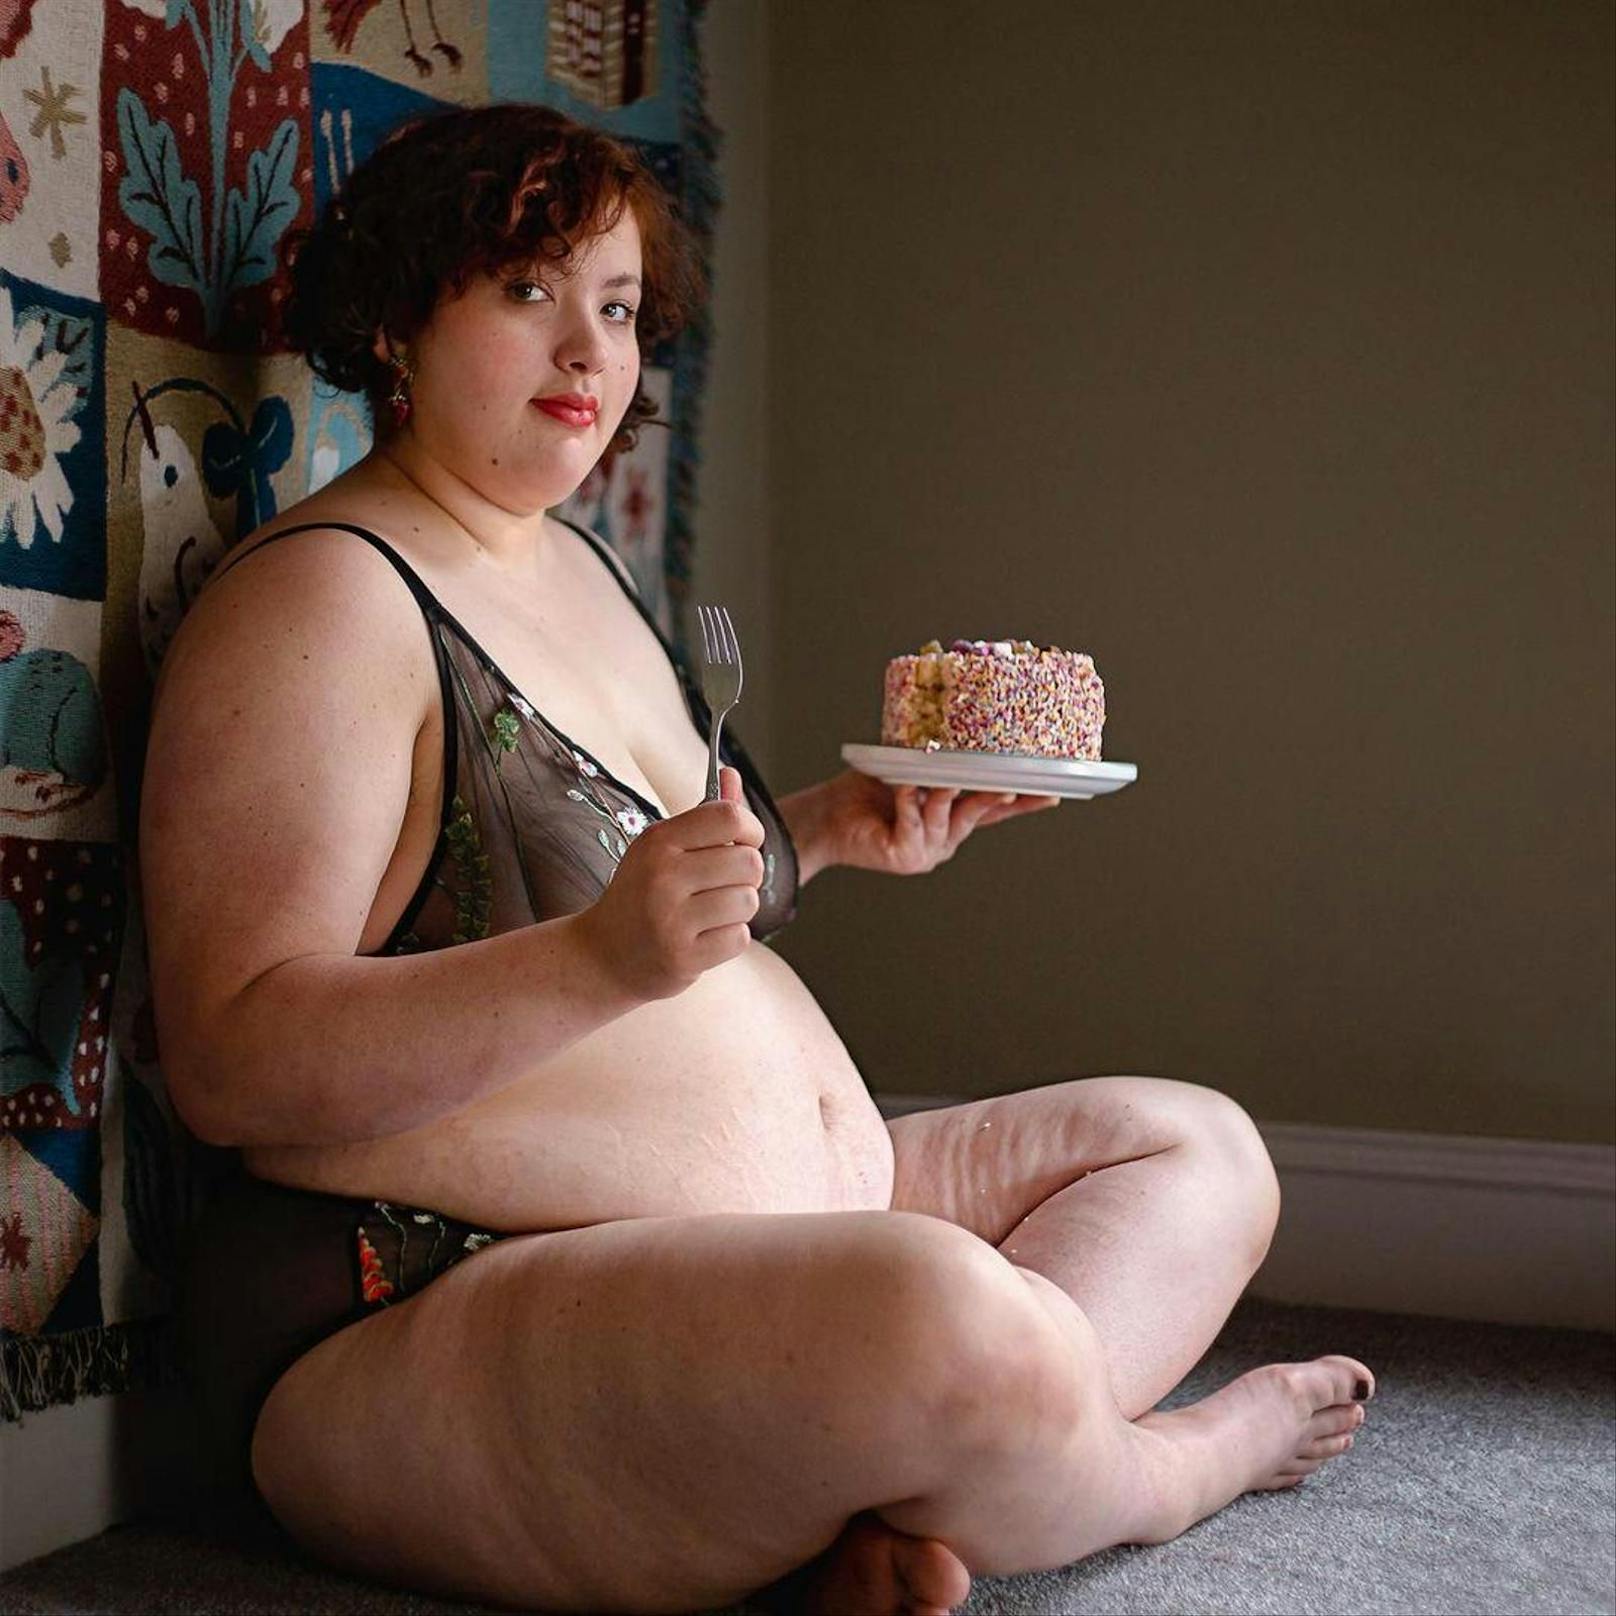 "Ich liebe Fotos von mehrgewichtigen Menschen mit Essen", sagt Marie Southard Ospina zu diesem Kalenderfoto von sich selbst.